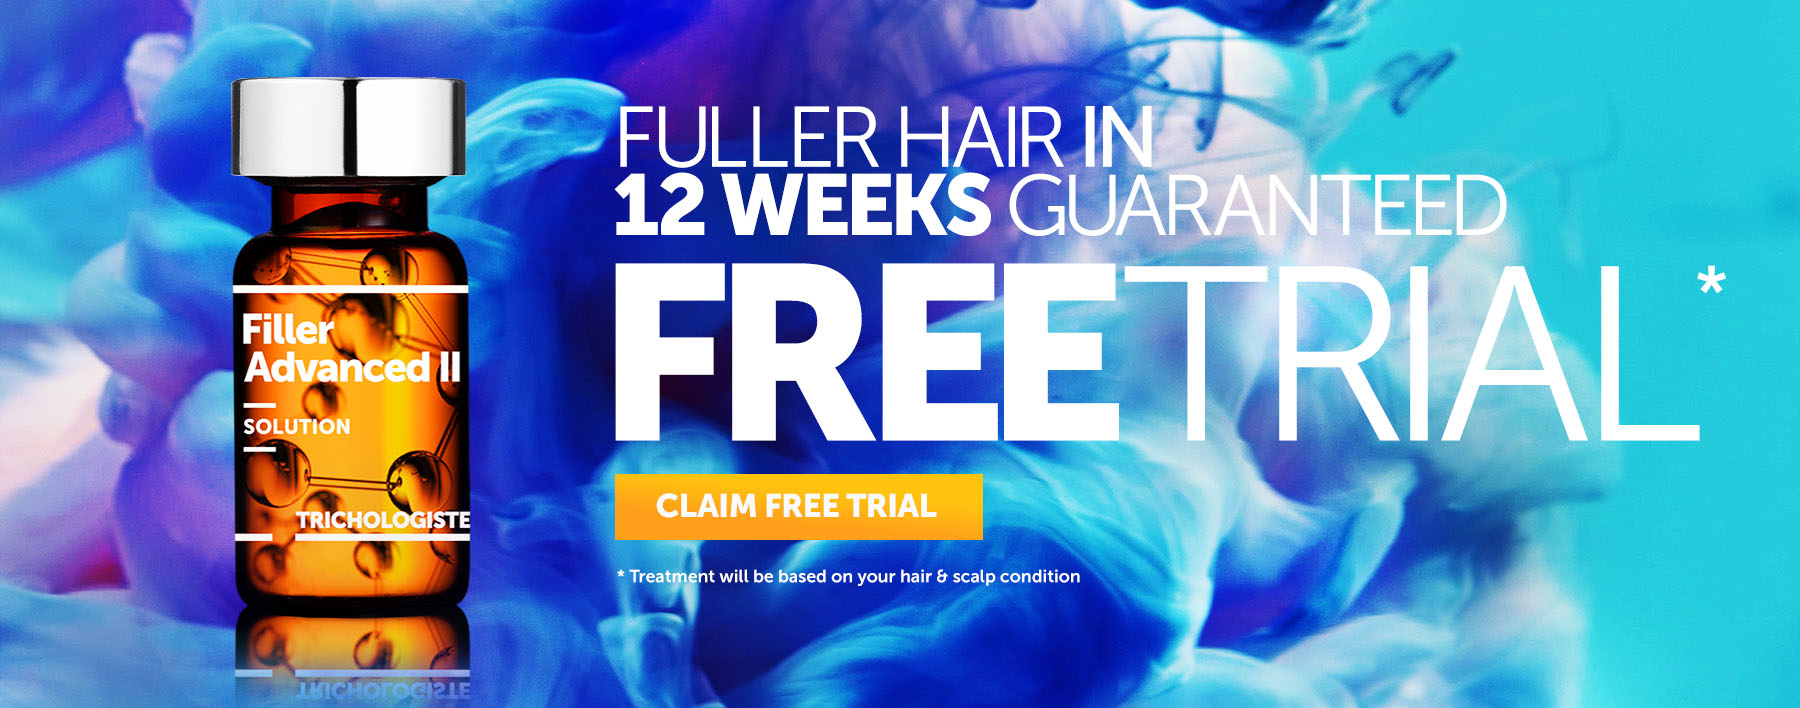 Fuller Hair in 12 Weeks, Guaranteed By Svenson